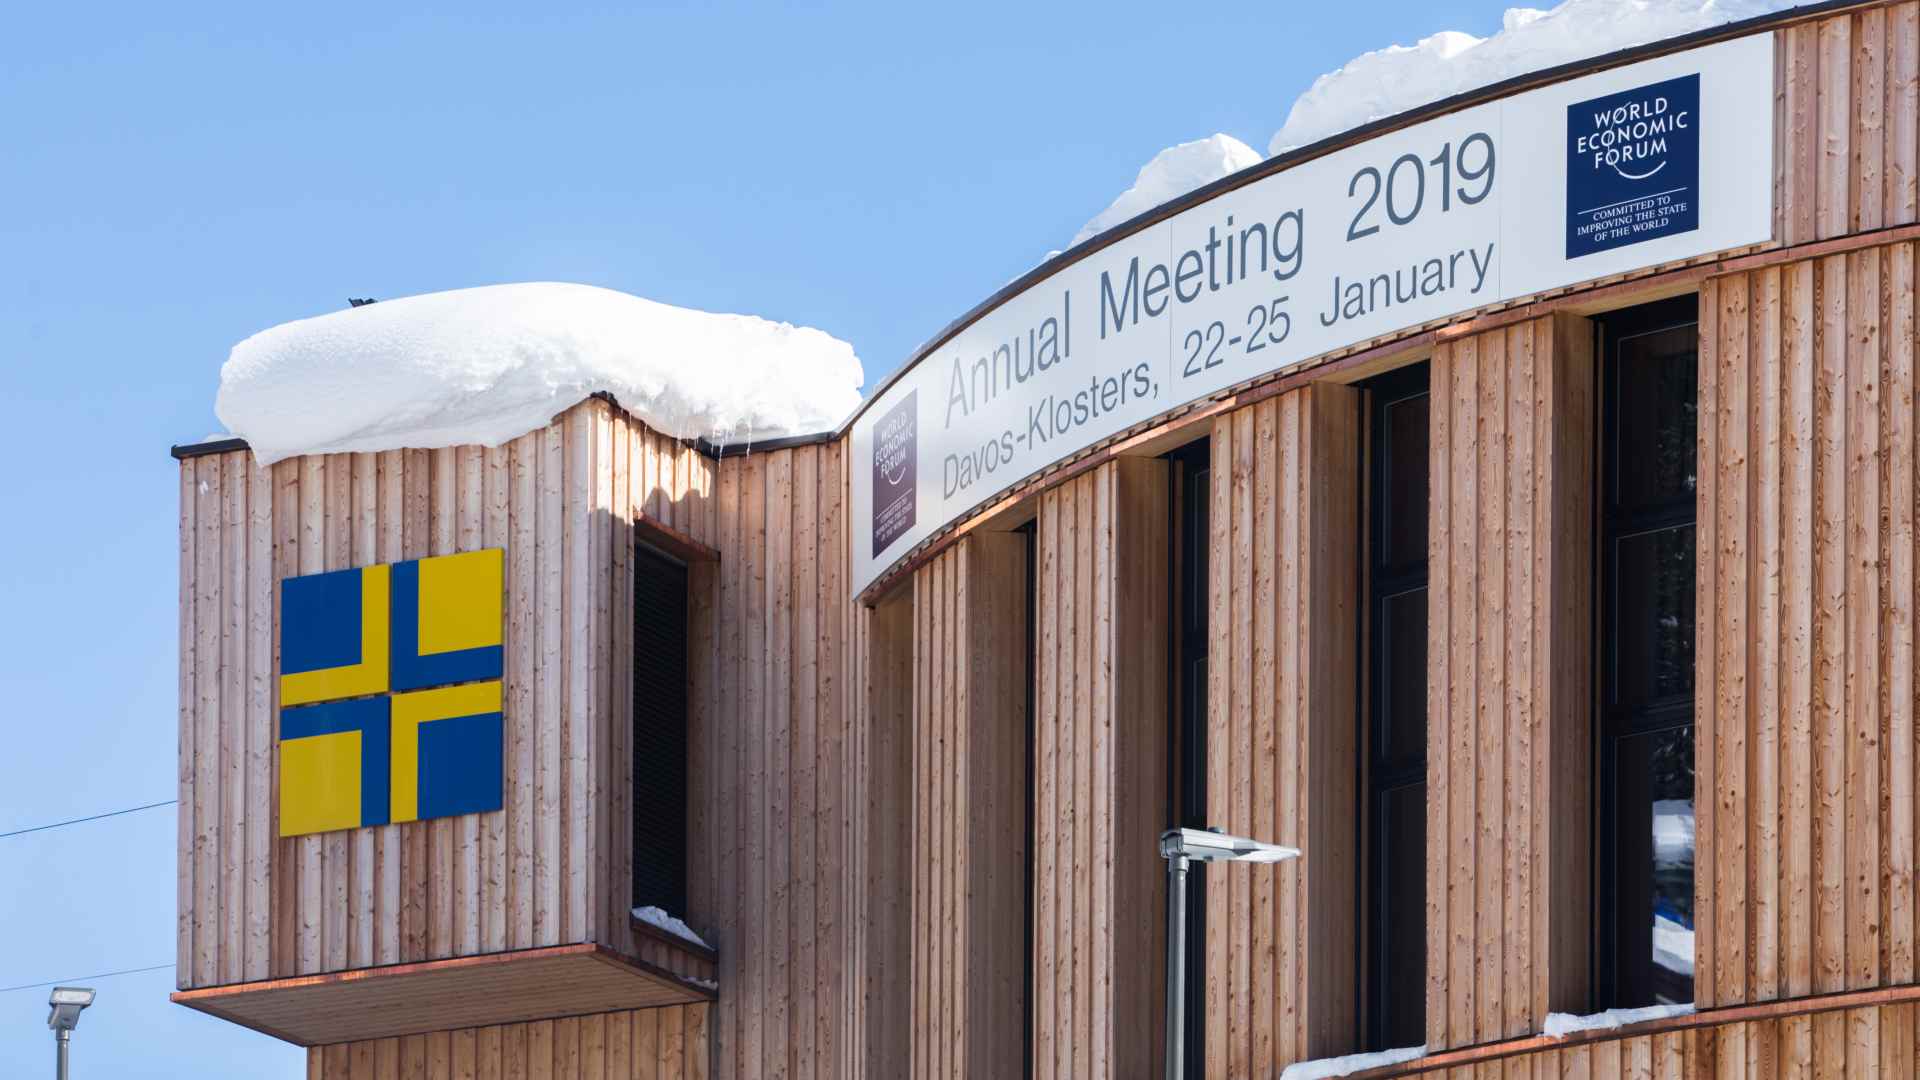 La Globalización 4.0, protagonista de las sesiones de Davos 2019